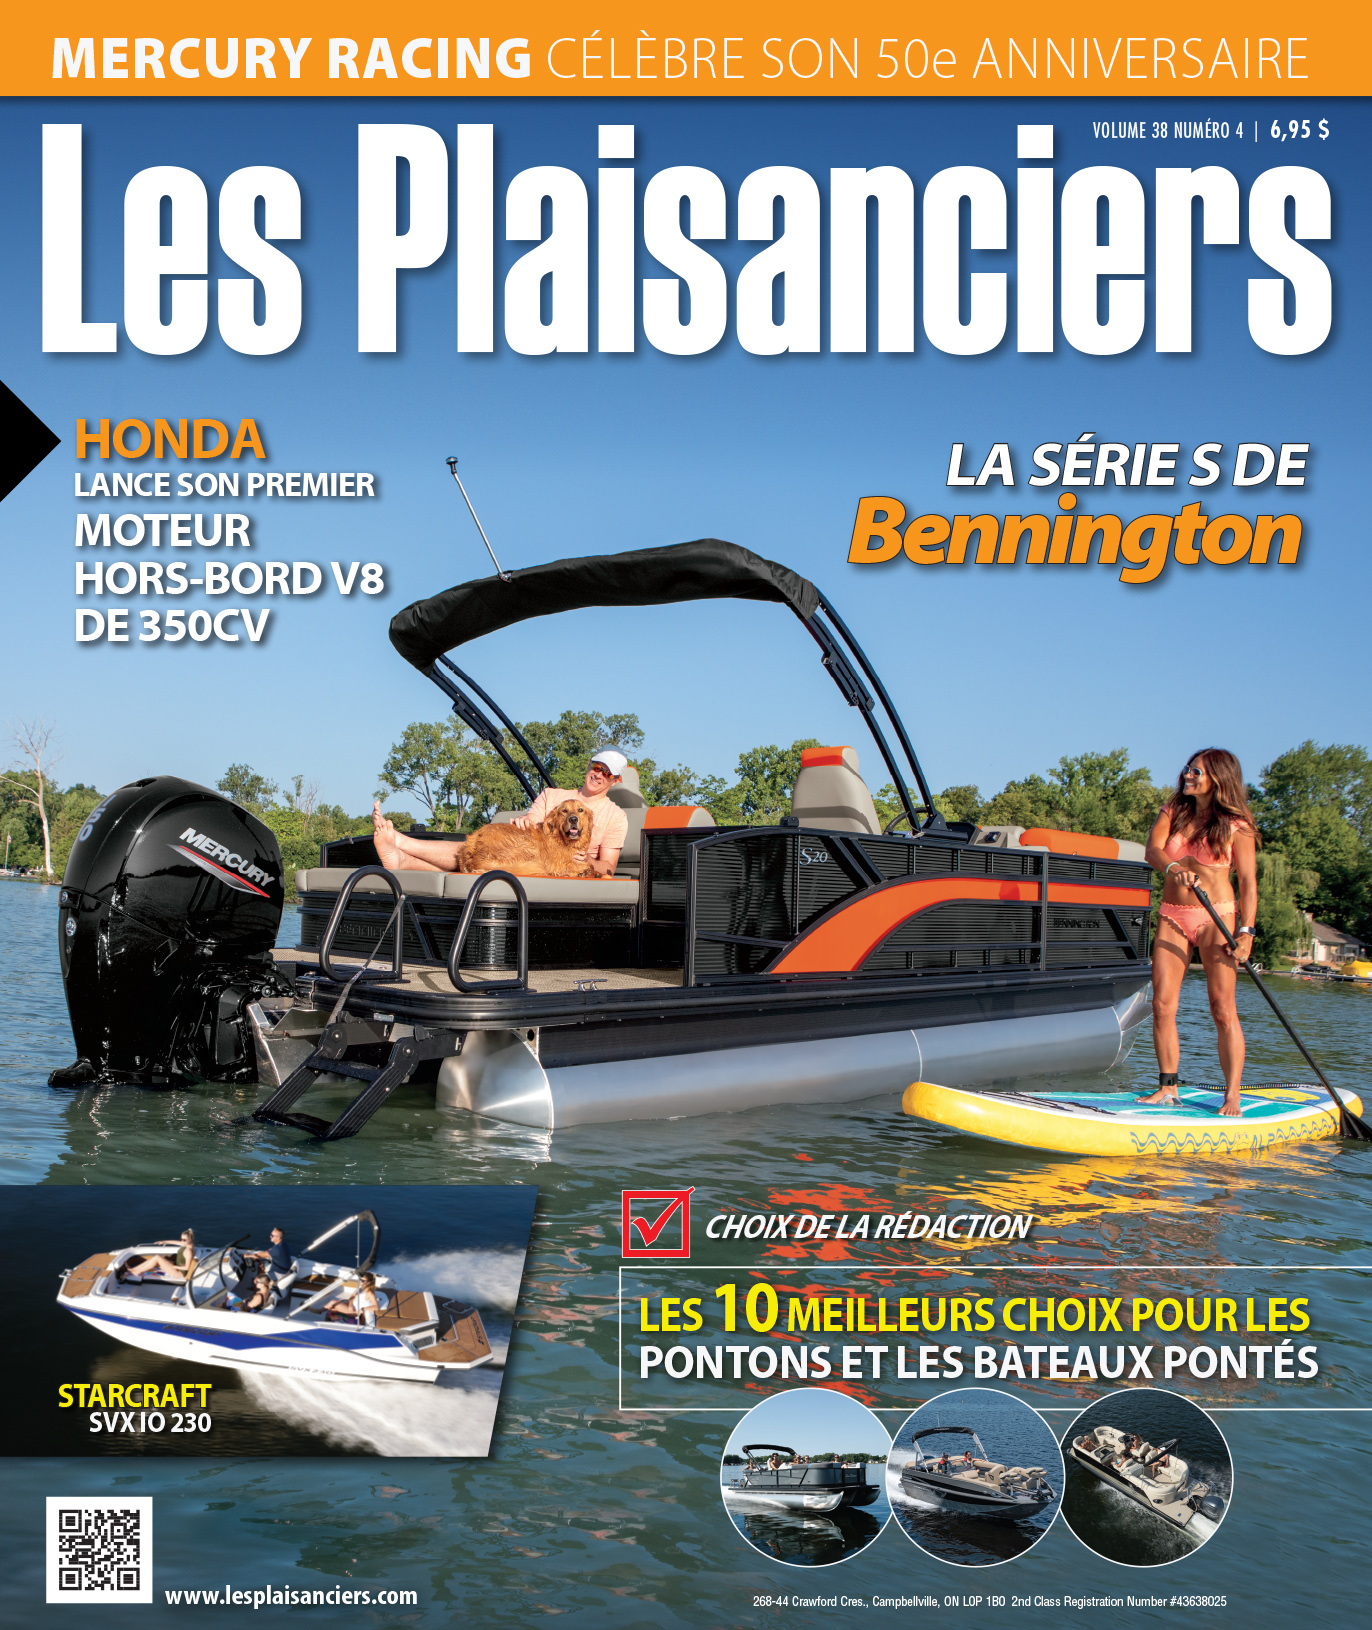 18 nouveaux bateaux pontons et bateaux pontés - Les Plaisanciers Magazine